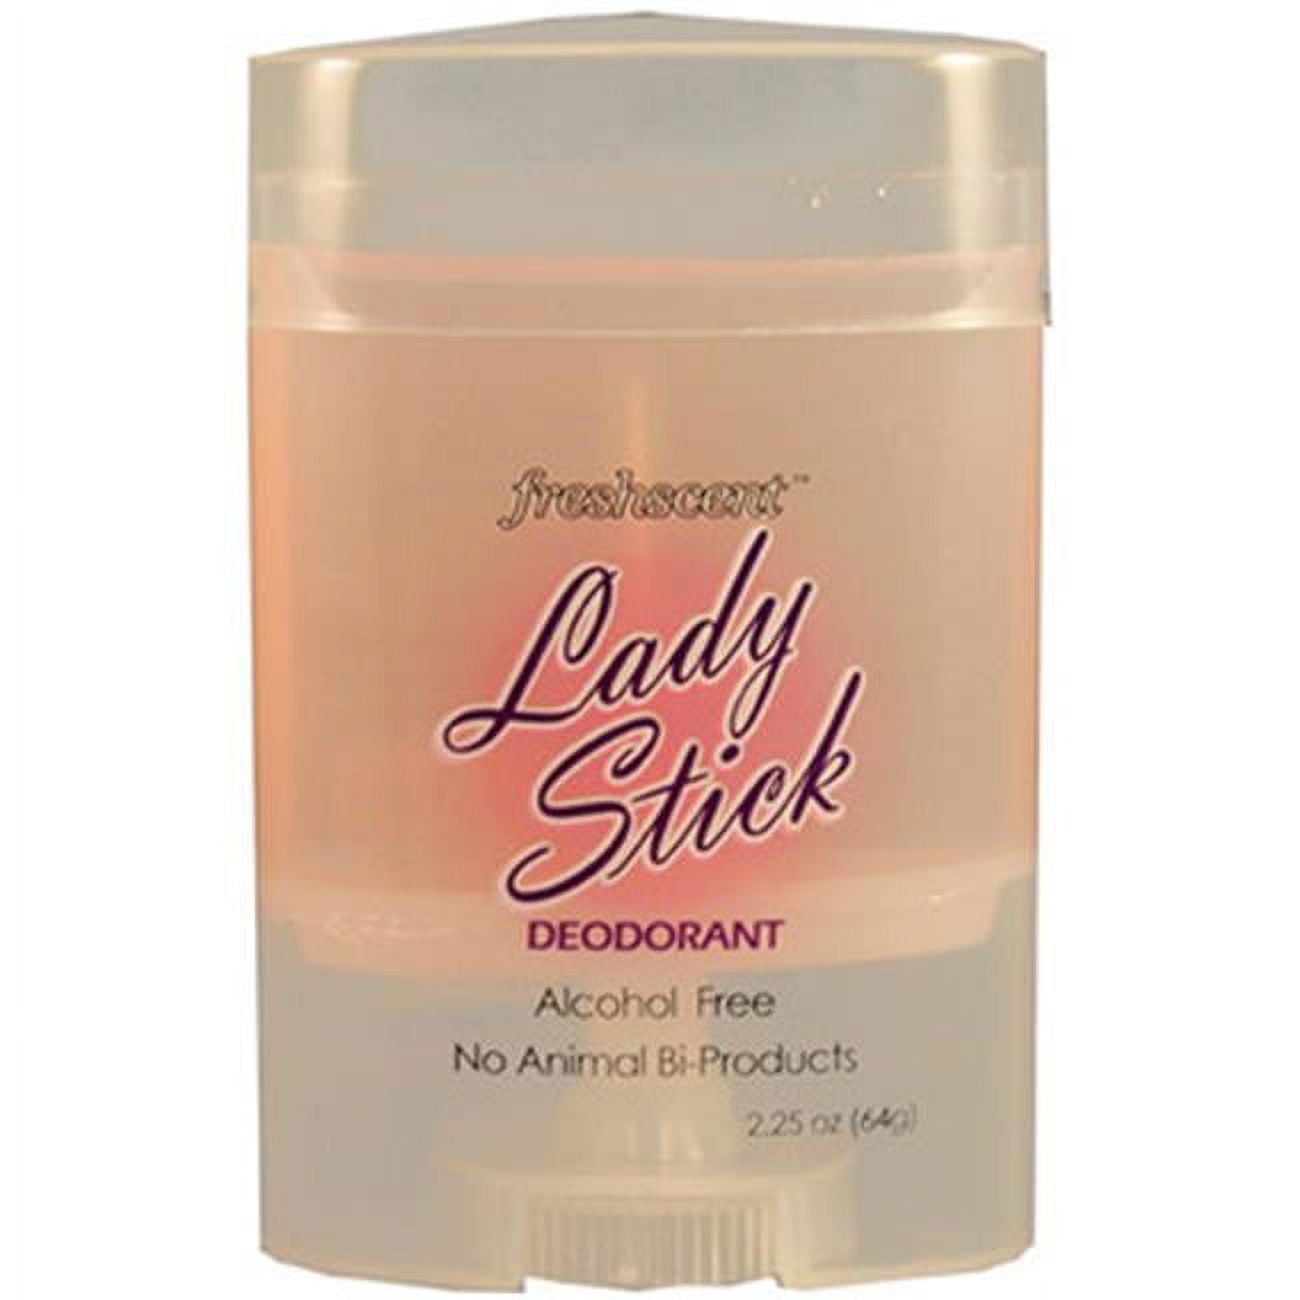 1891159 Freshscent Ladies Stick Deodorant 2.25 Oz Case Of 144